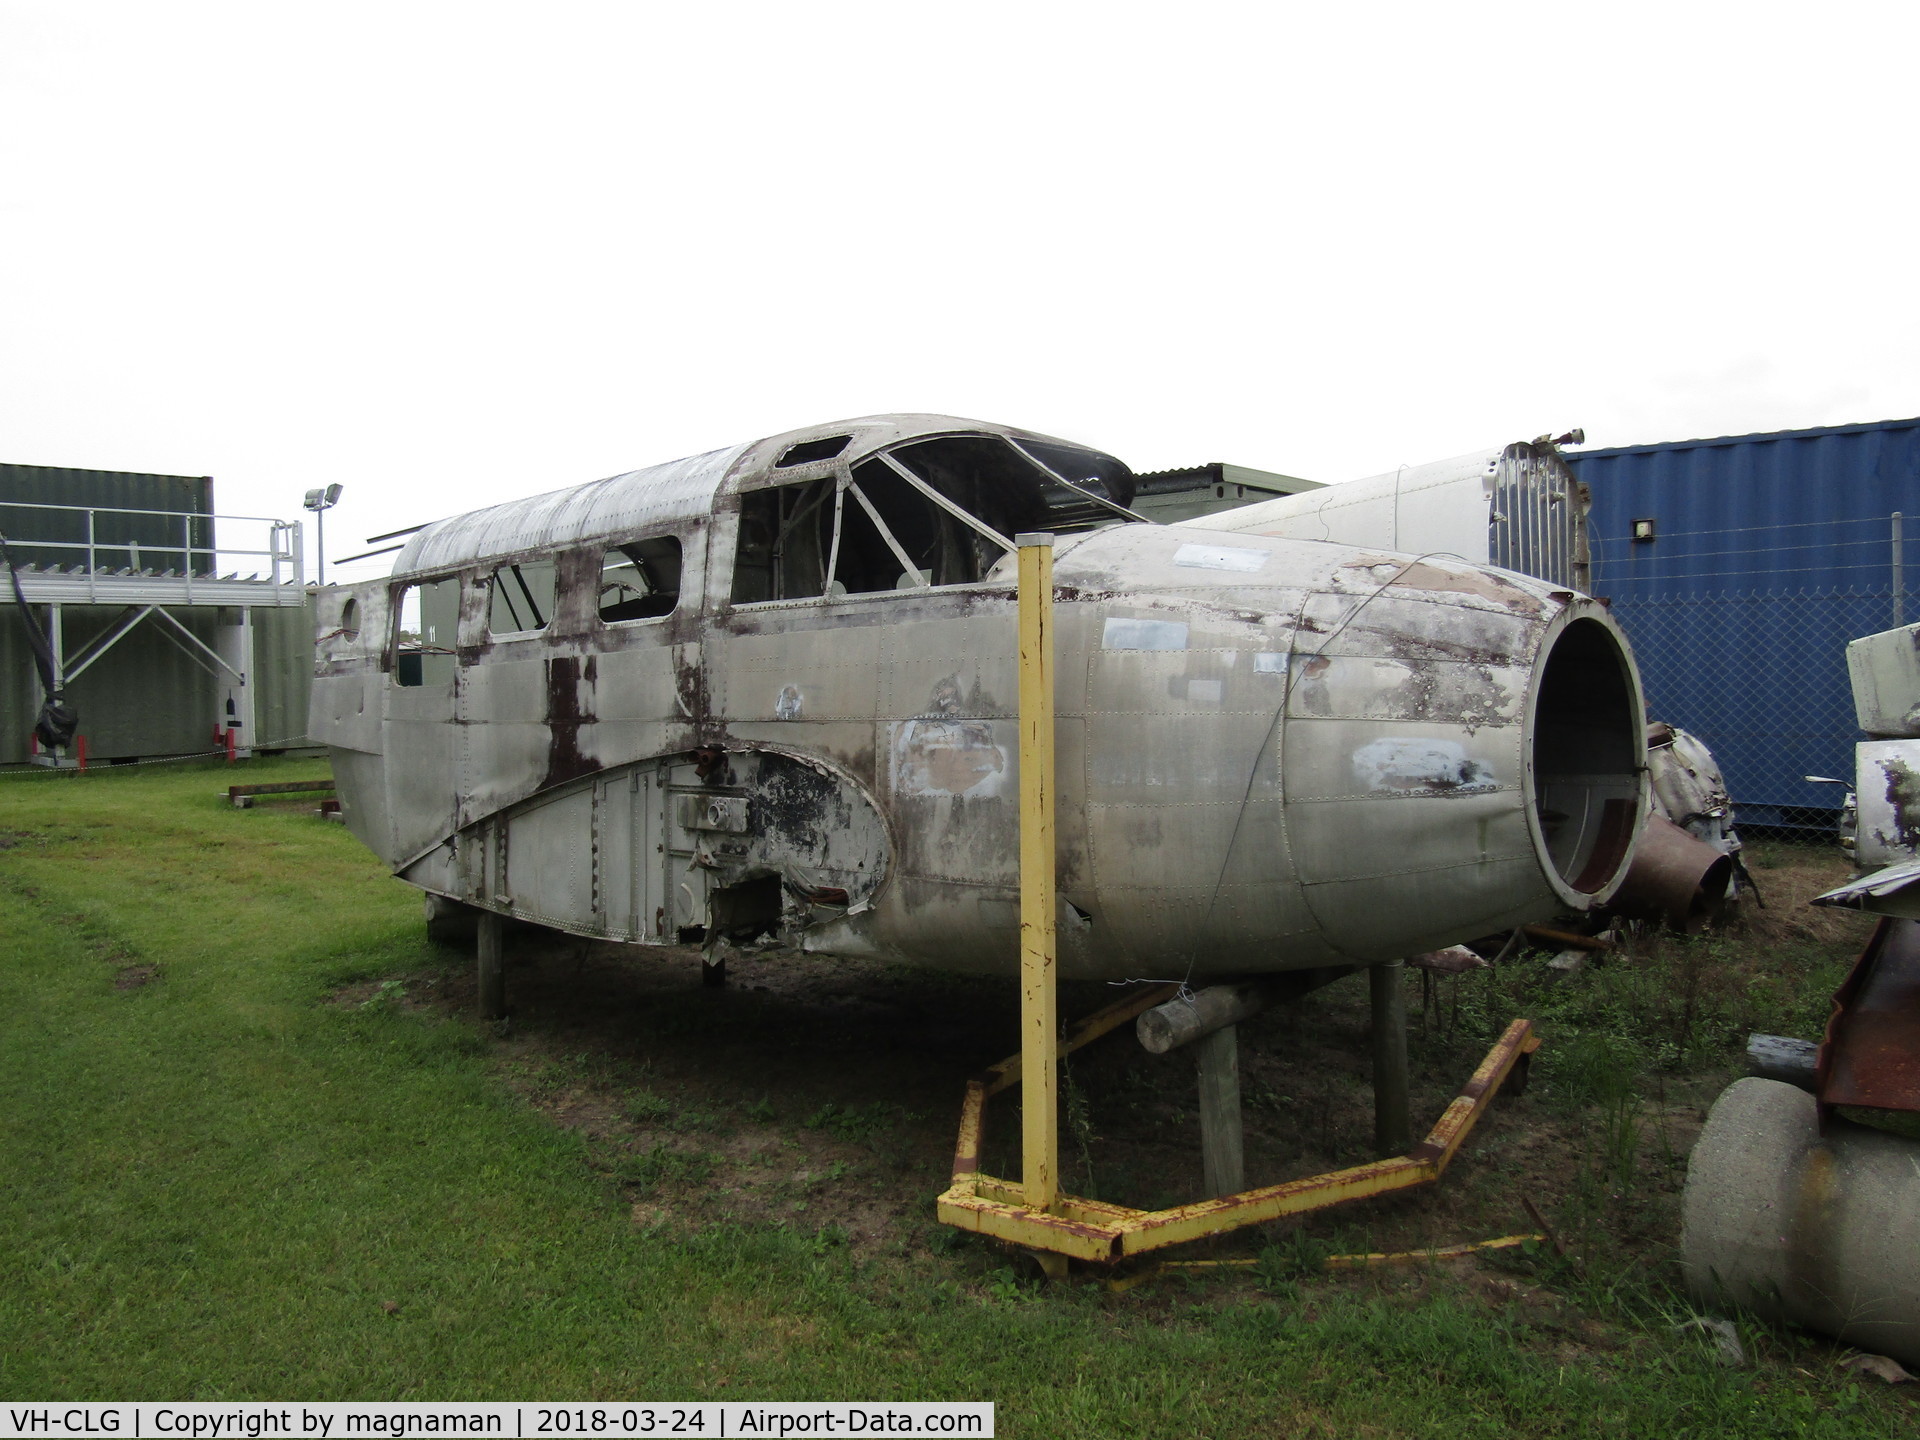 VH-CLG, 1942 Beech C-18S C/N 4213, Not in a great state now at Caloundra Museum